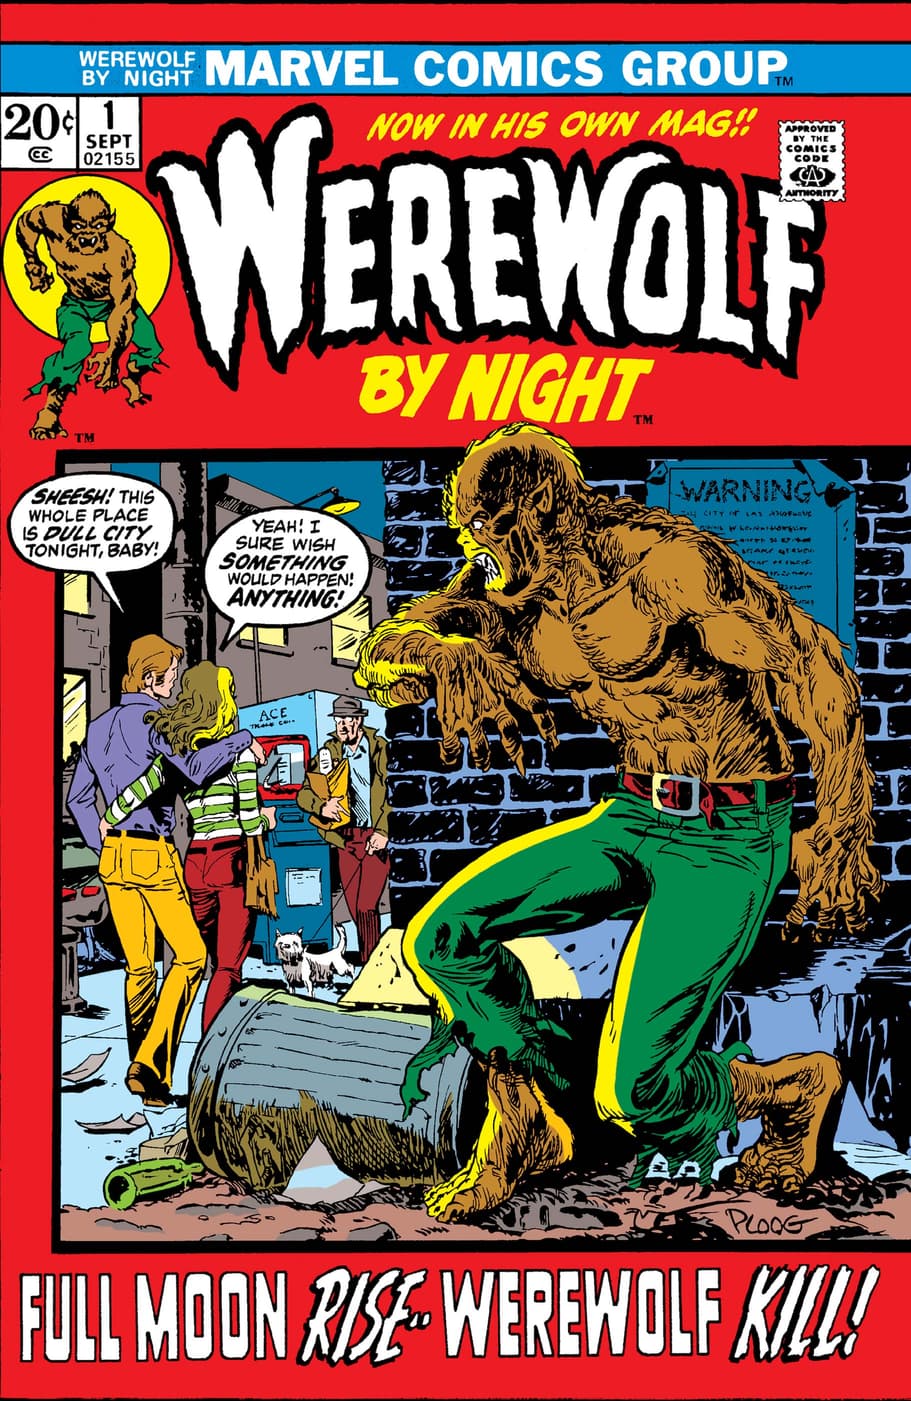 Werewolf by Night!